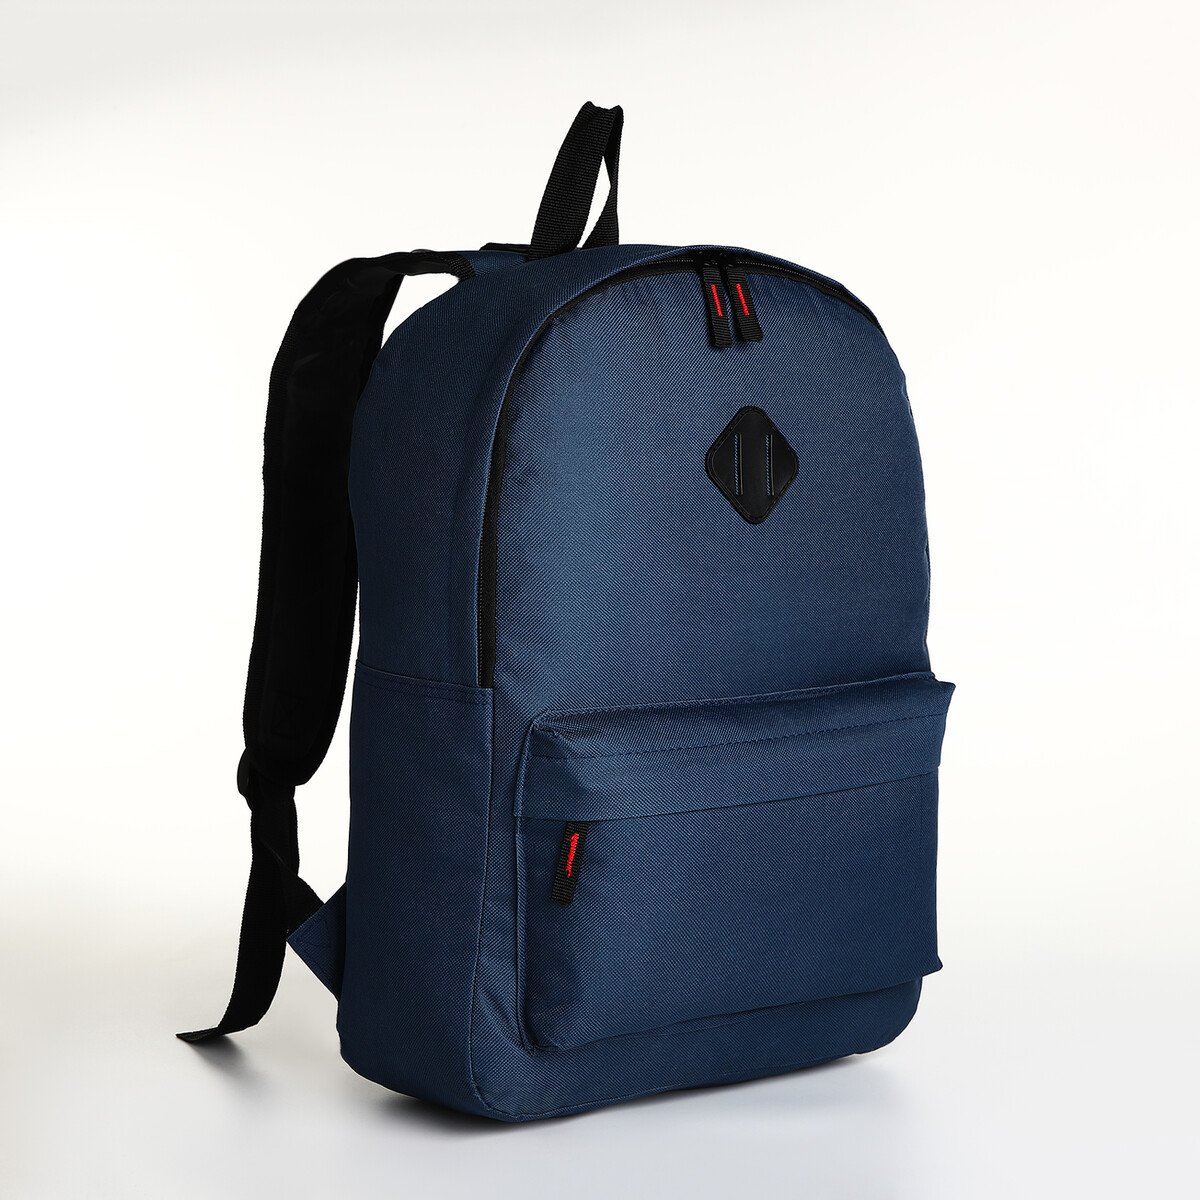 Рюкзак молодежный на молнии, наружный карман, цвет синий рюкзак молодежный отд на молнии н карман синий 42 х 31 х 15 см